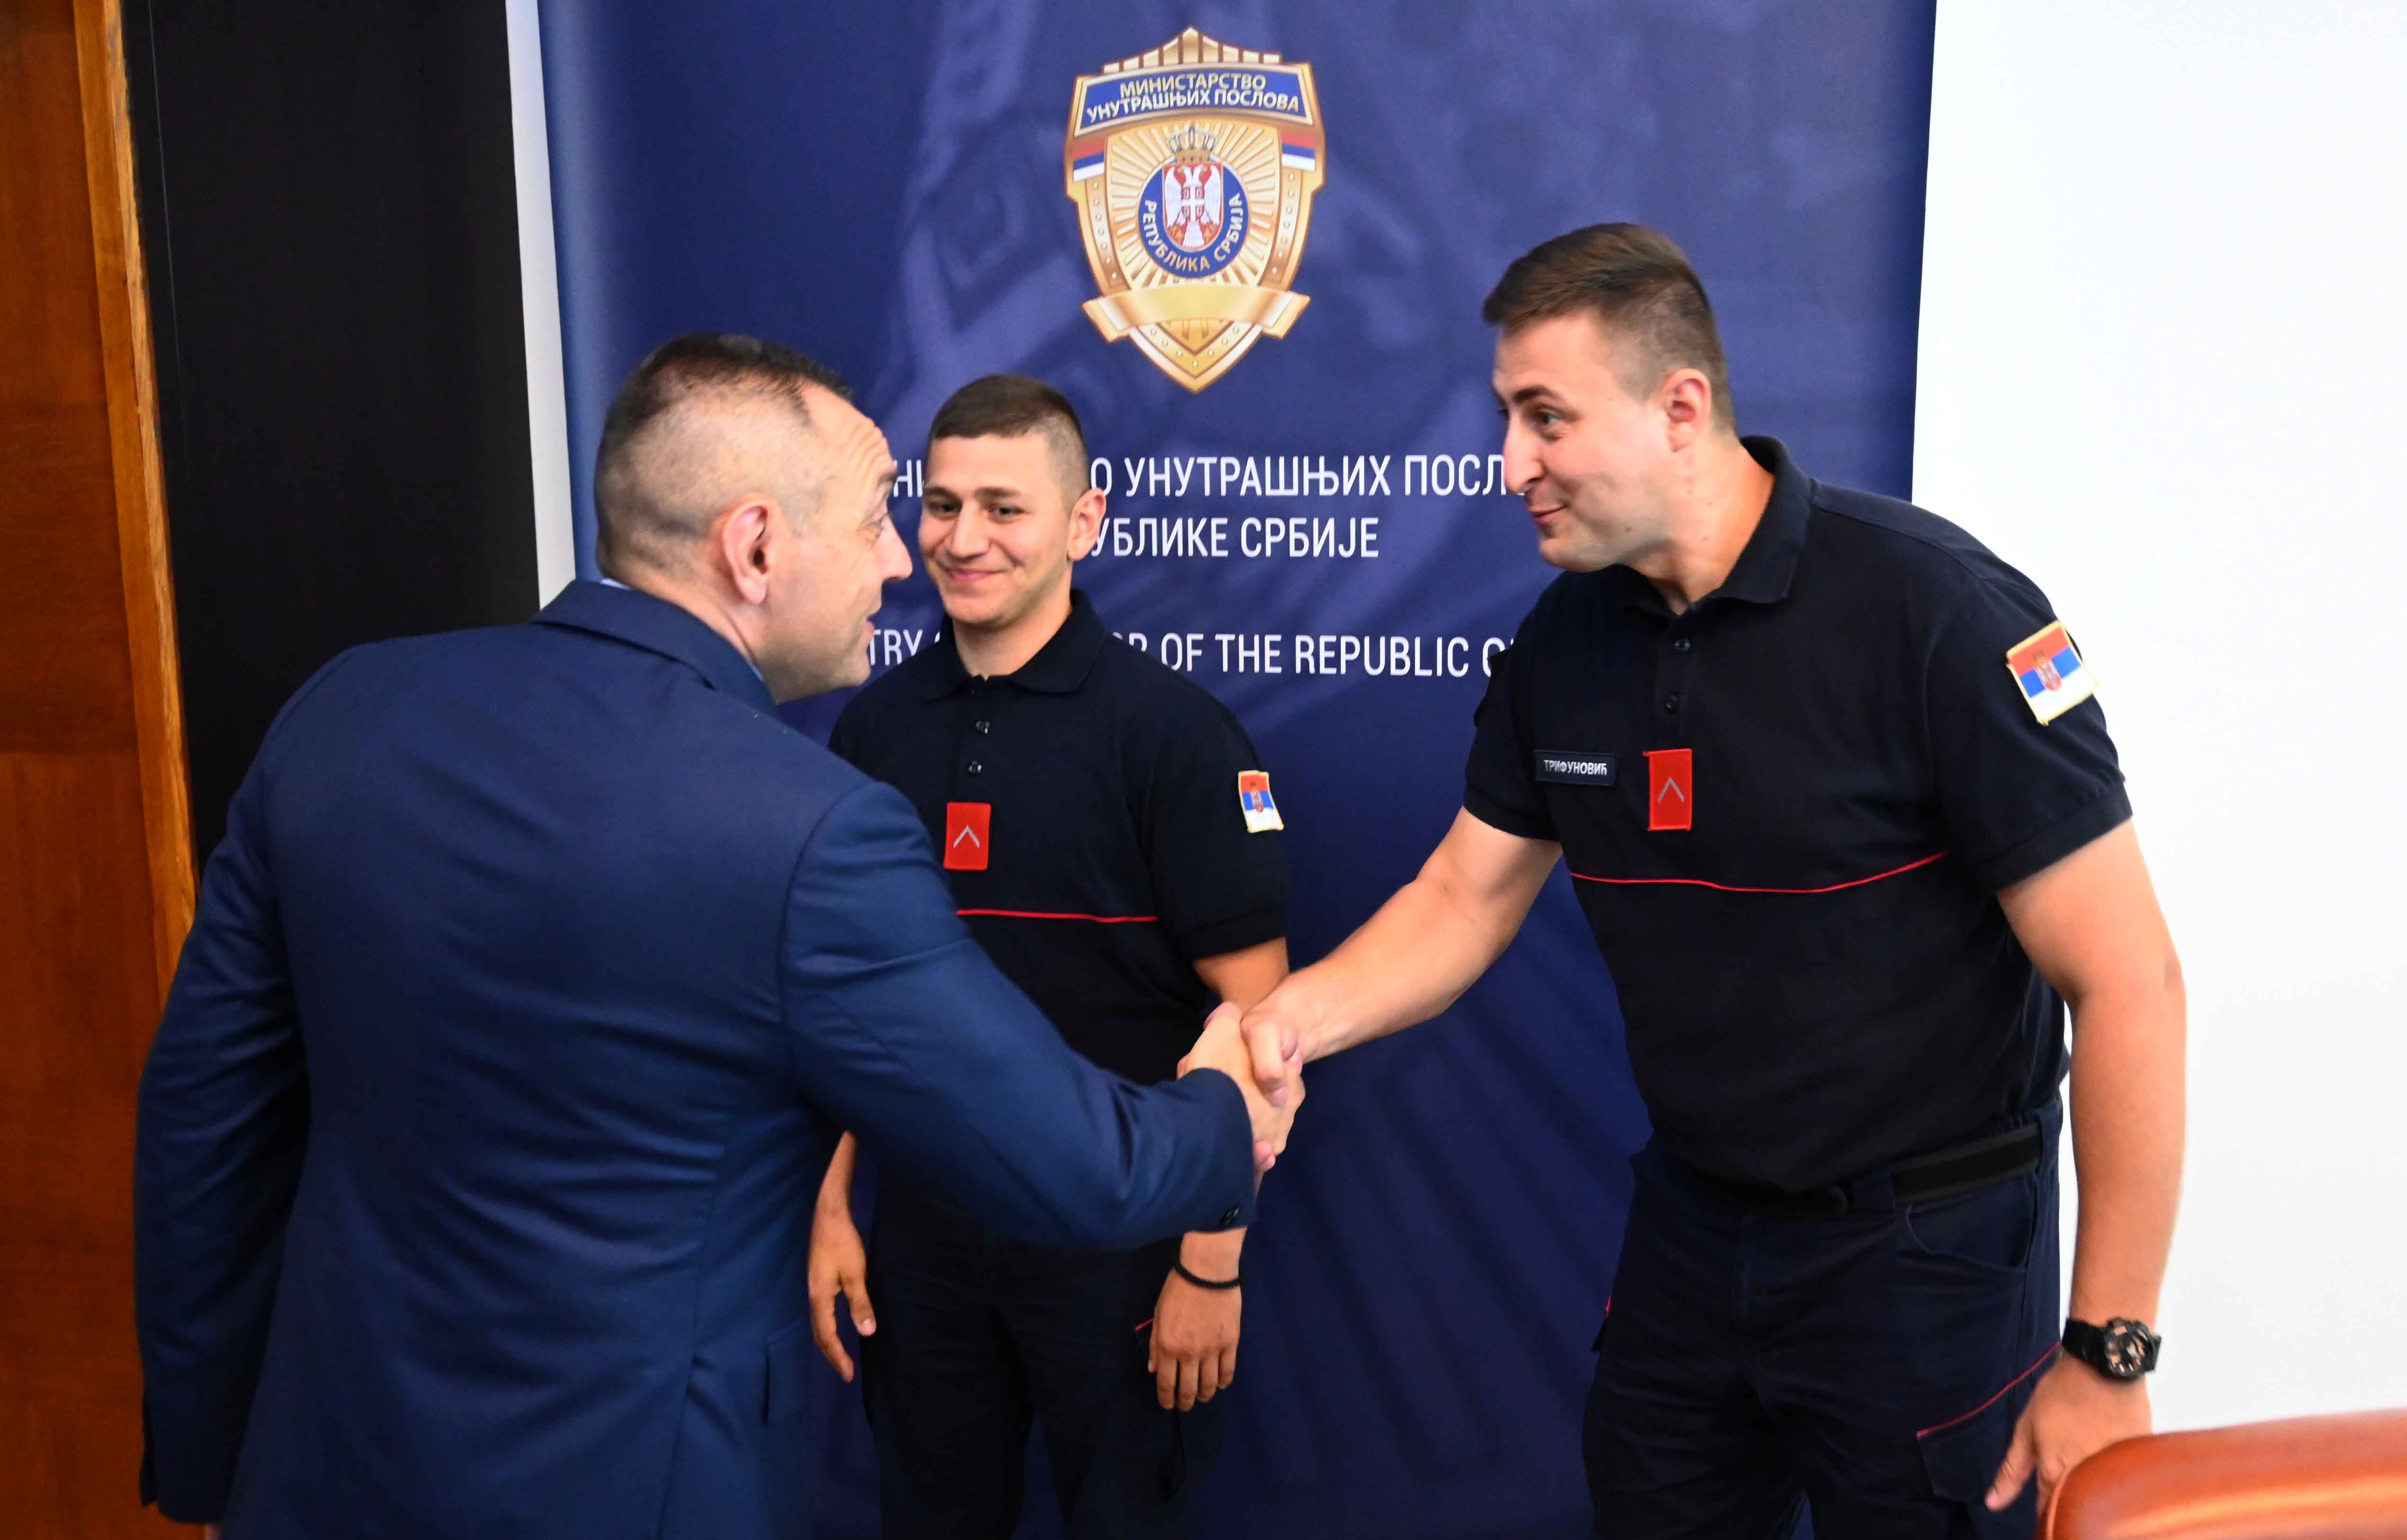 Ministar Aleksandar Vulin pohvalio je pripadnike Vatrogasno-spasilačke čete u Zaječaru, poručivši im da su oni istinski heroji